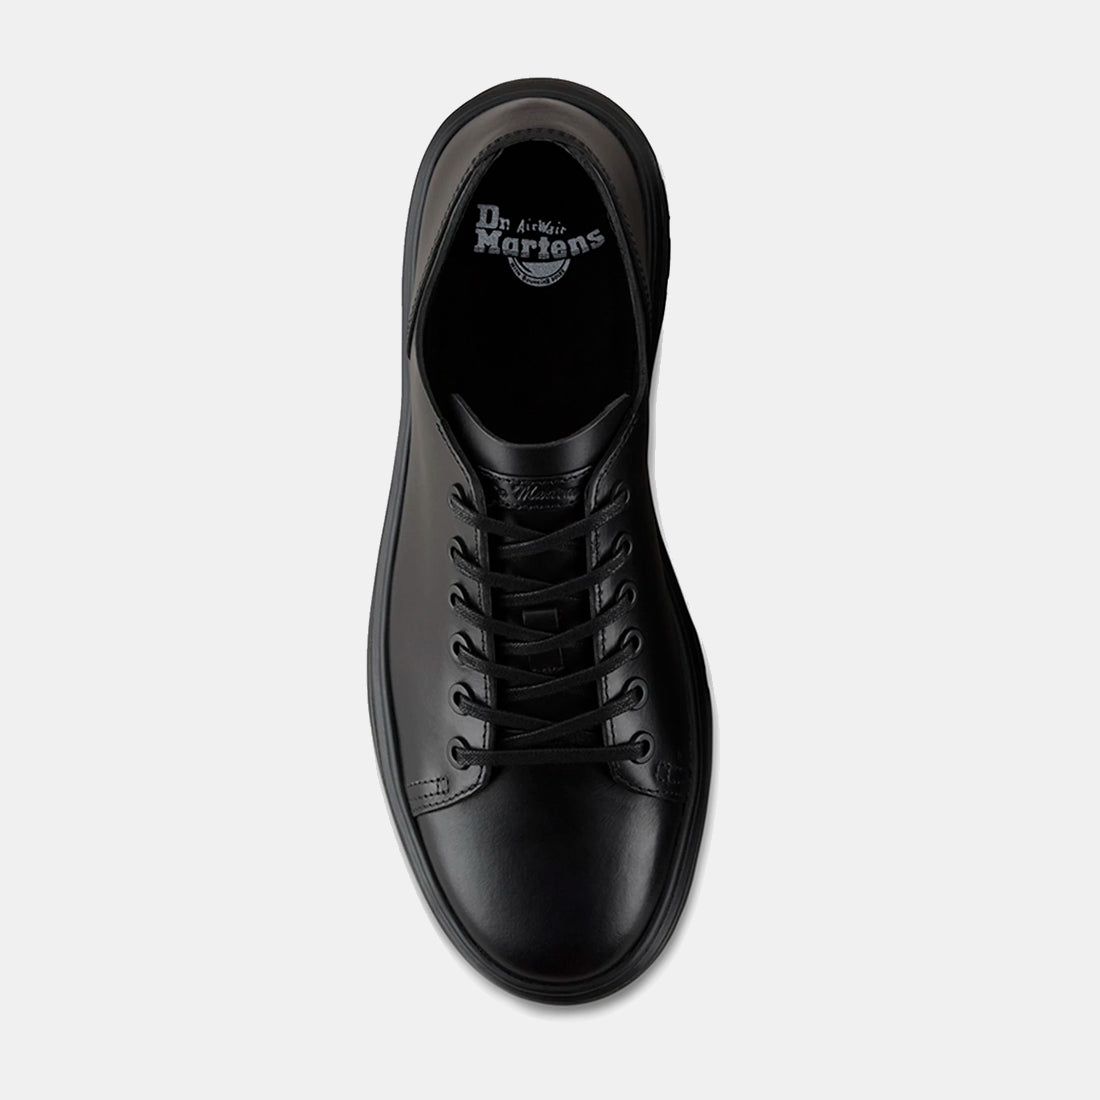 Dr Marteen's Black Shoe